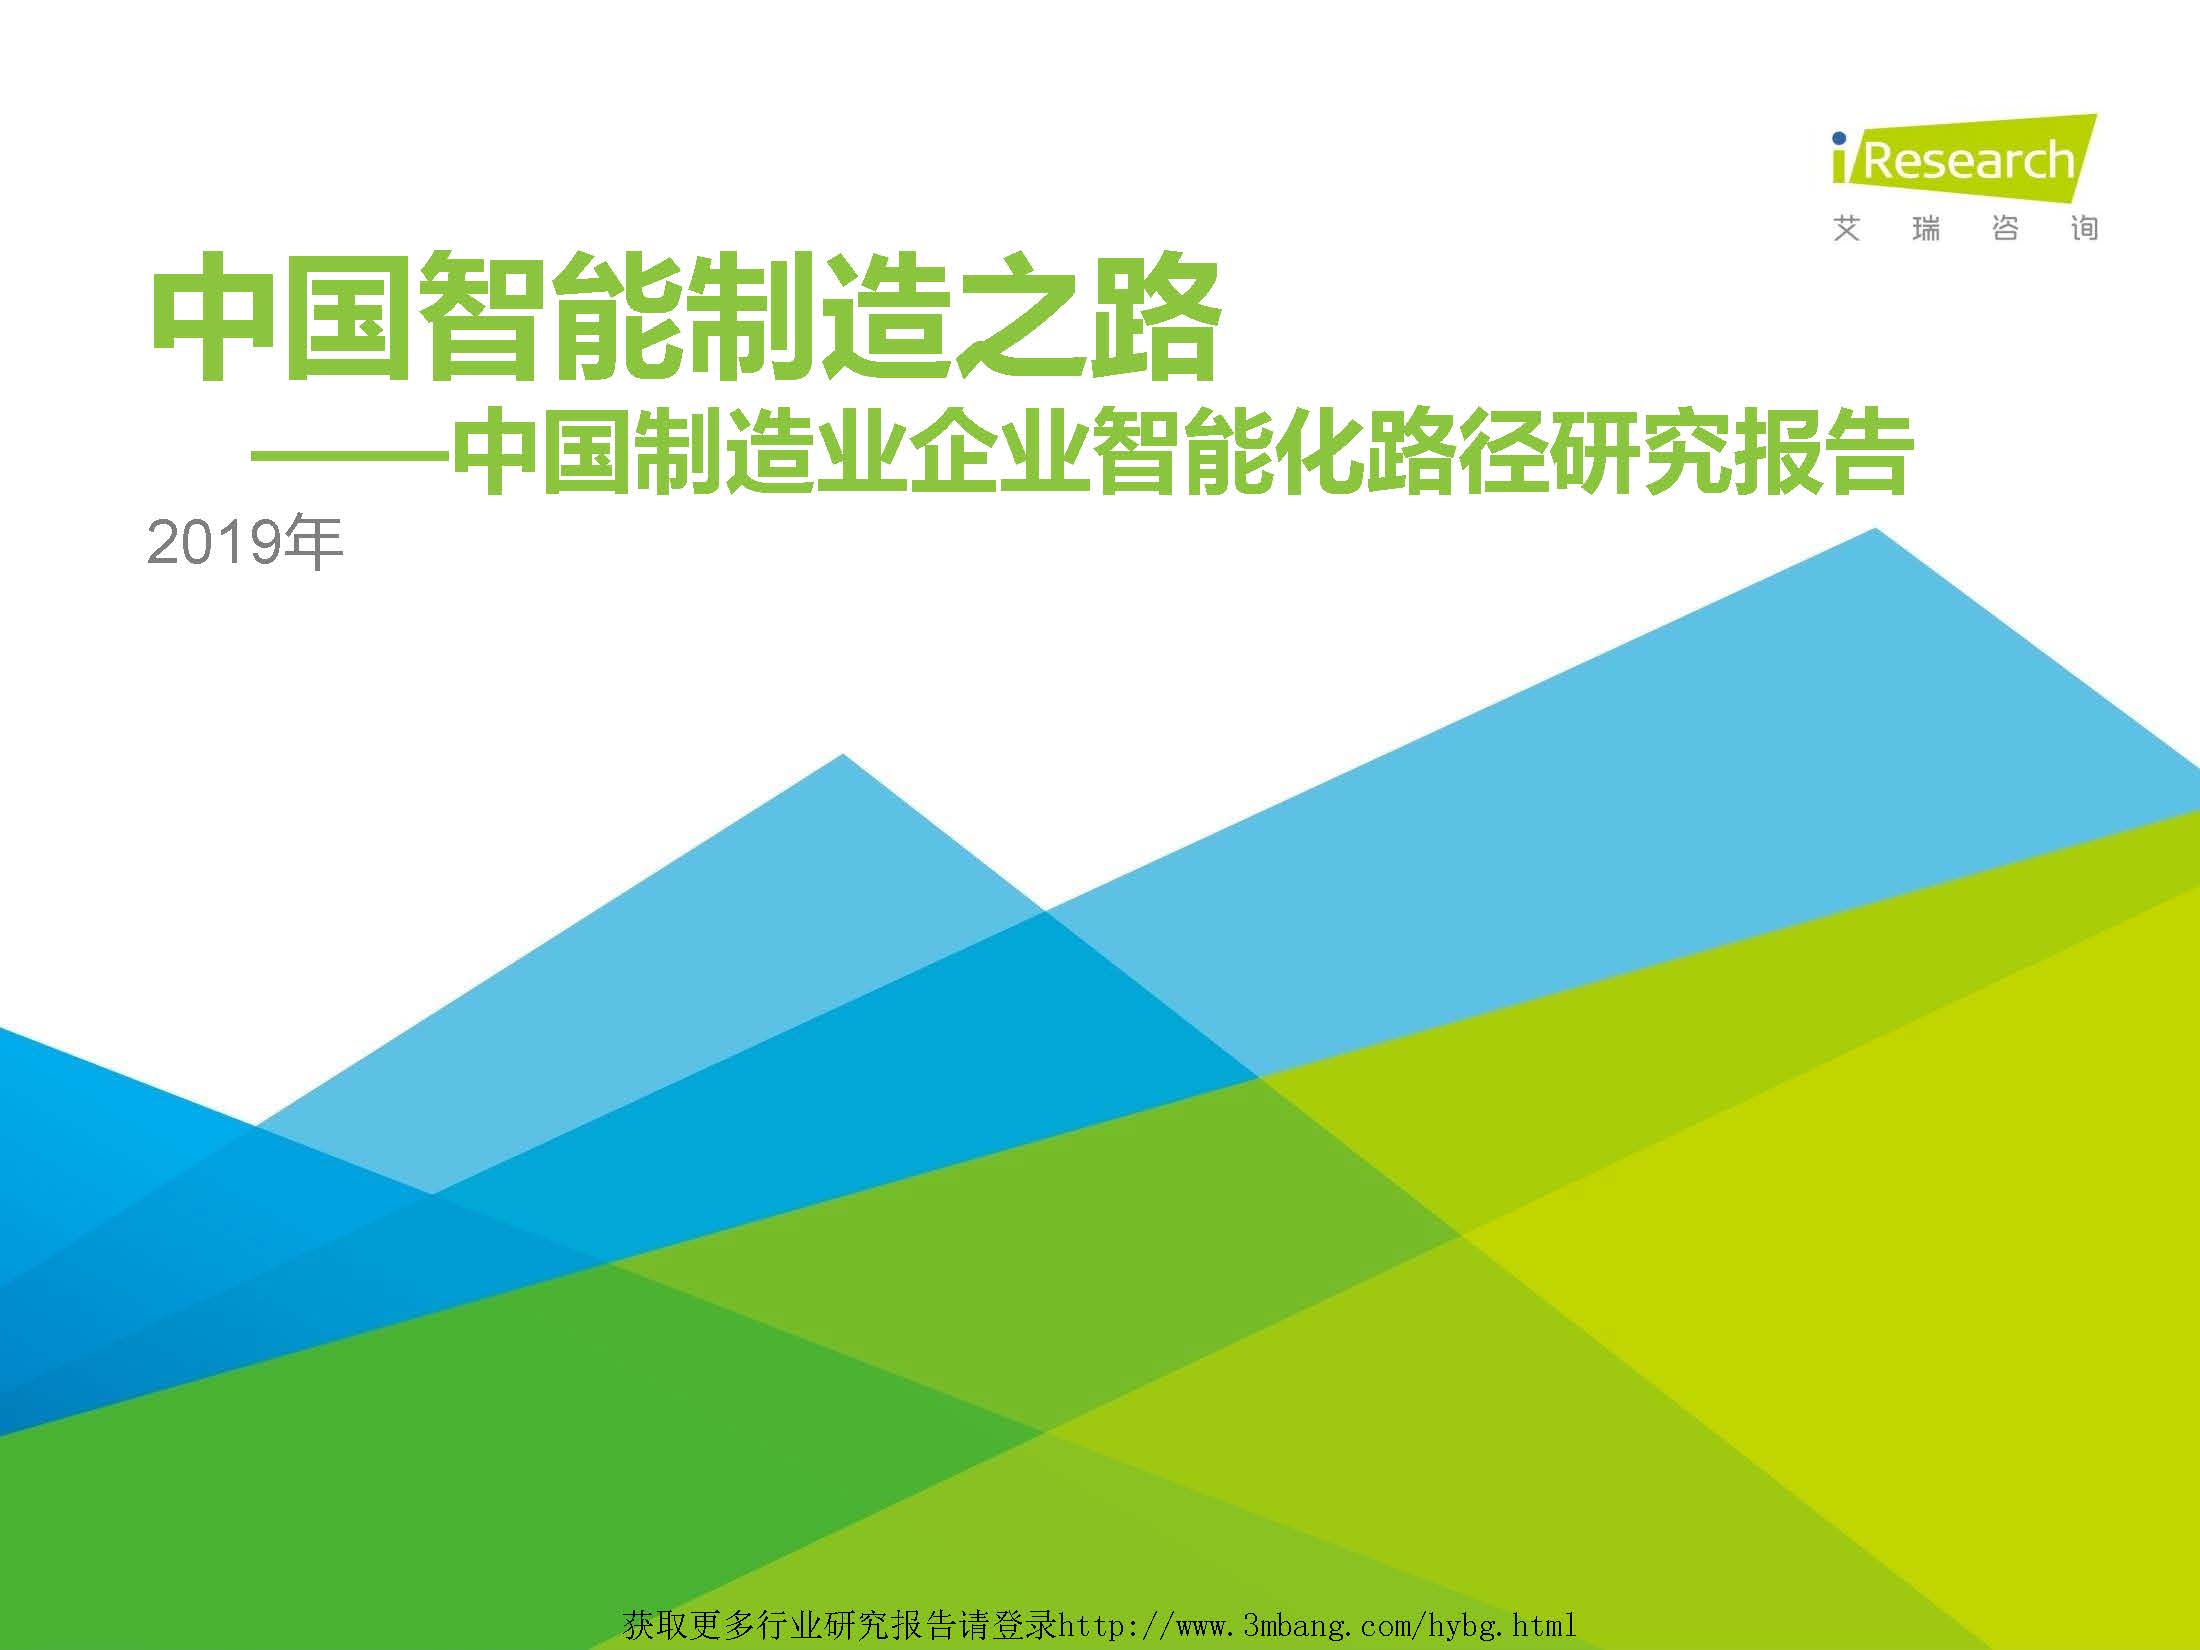 艾瑞：2019年中国制造业企业智能化路径研究报告（附下载地址）